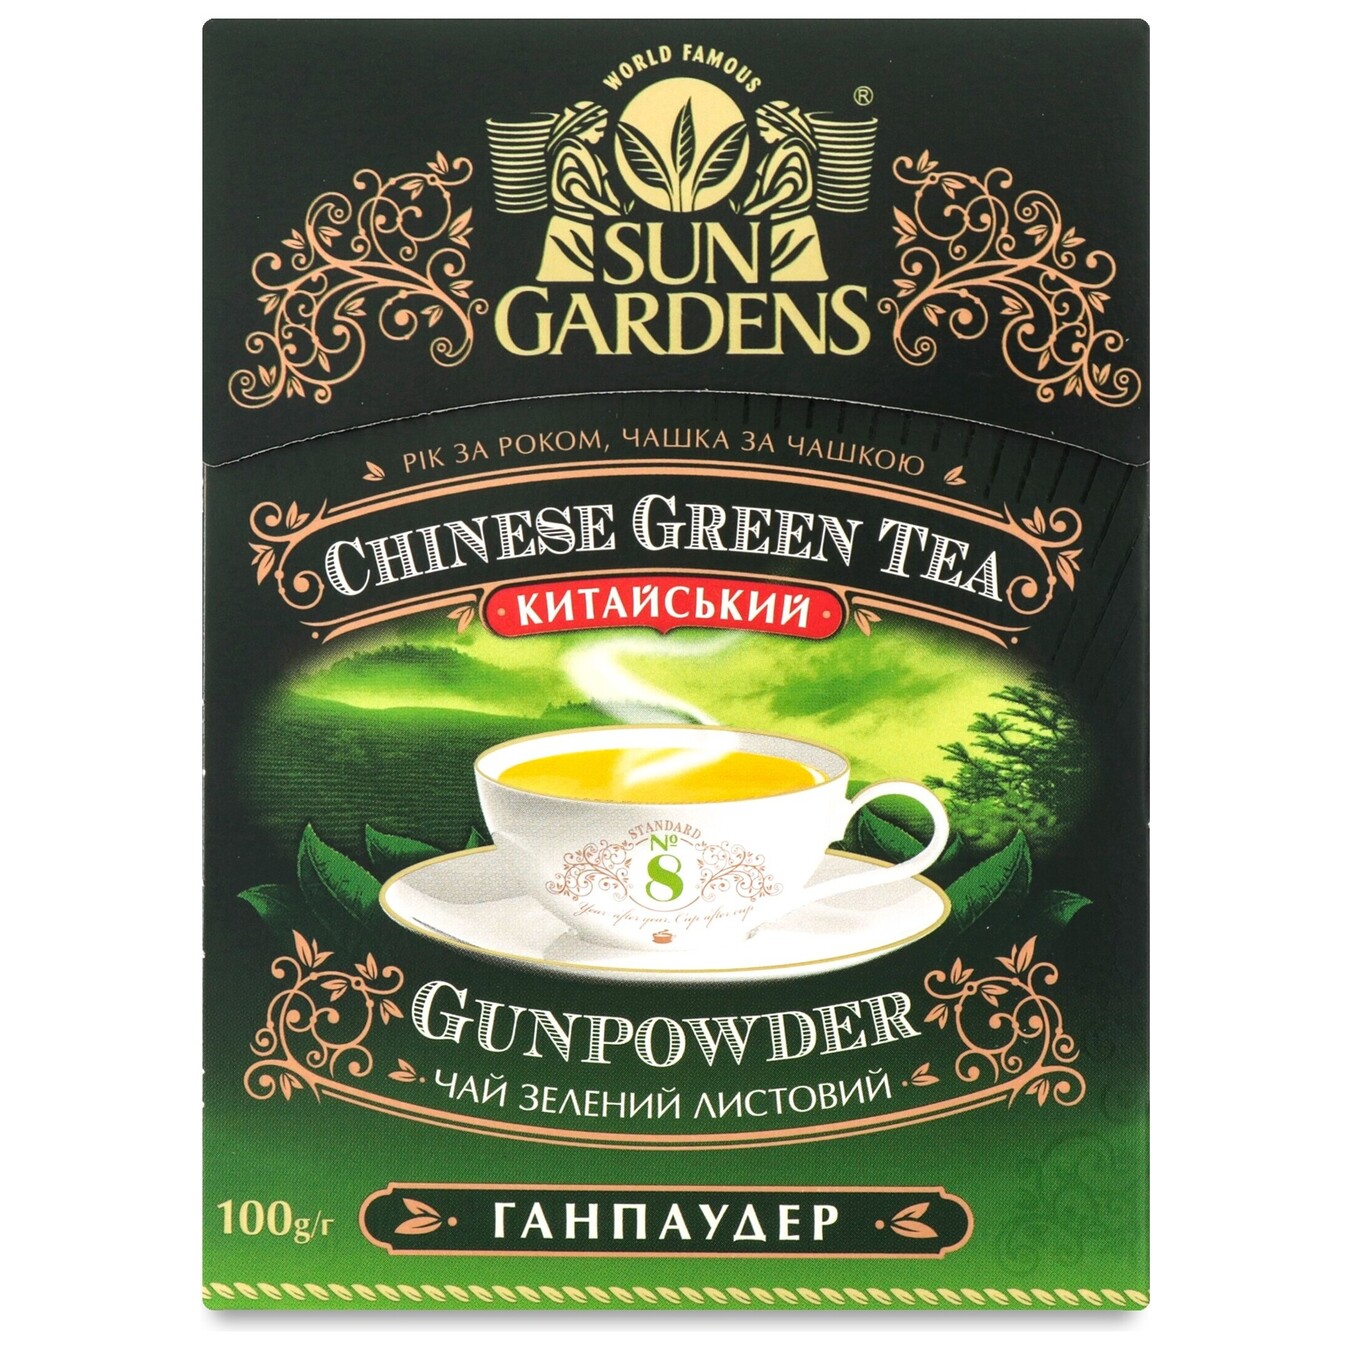 Чай зеленый Sun Gardens китайский байховый крупнолистовой высшего сорта Ганпаудер 100г